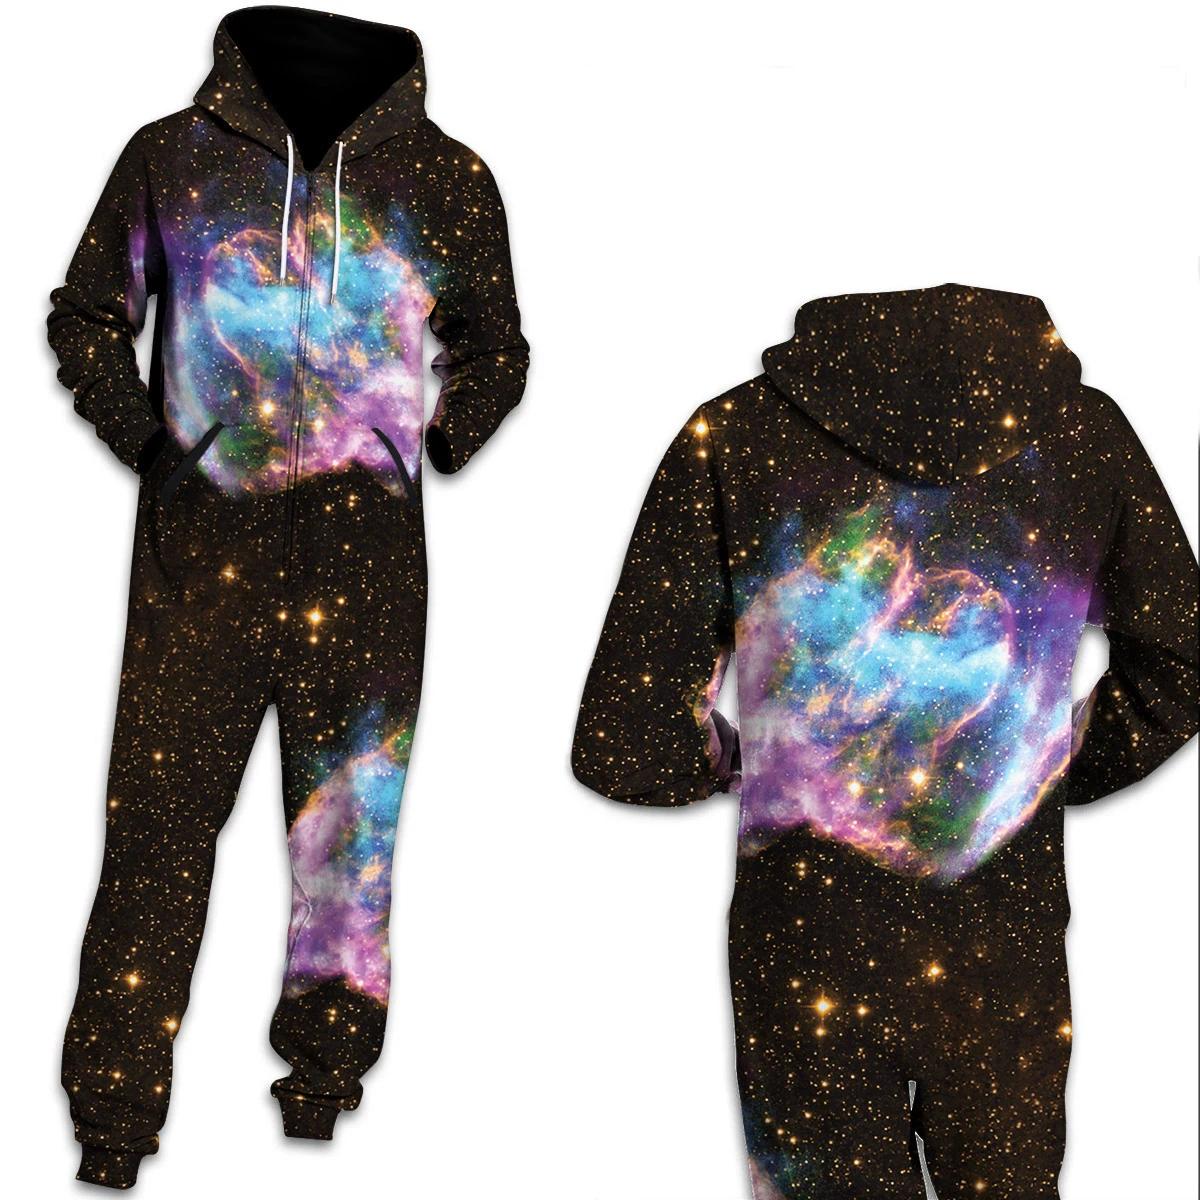 Женские пижамы с космическими галактиками и звездами, одежда для дома, унисекс, свободные, с капюшоном, на молнии, открытые, пижамы, Комбинезоны для взрослых